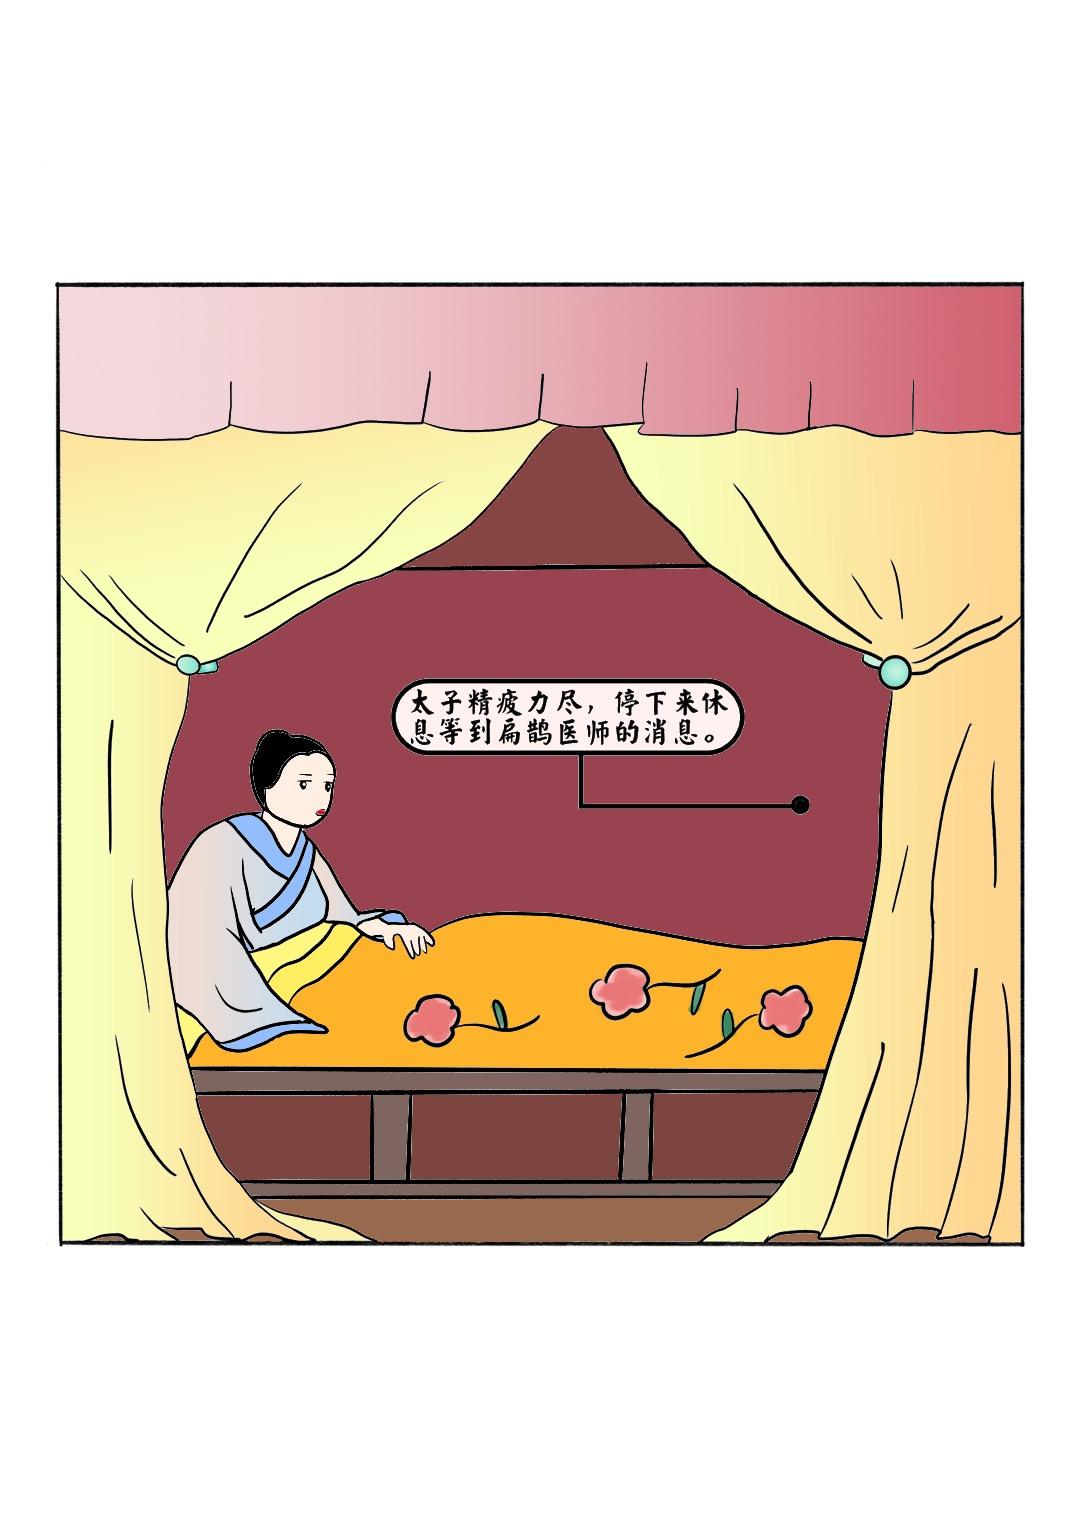 中醫入門之鍼灸趣味科普漫畫 - 扁鵲妙手起死回生 - 6